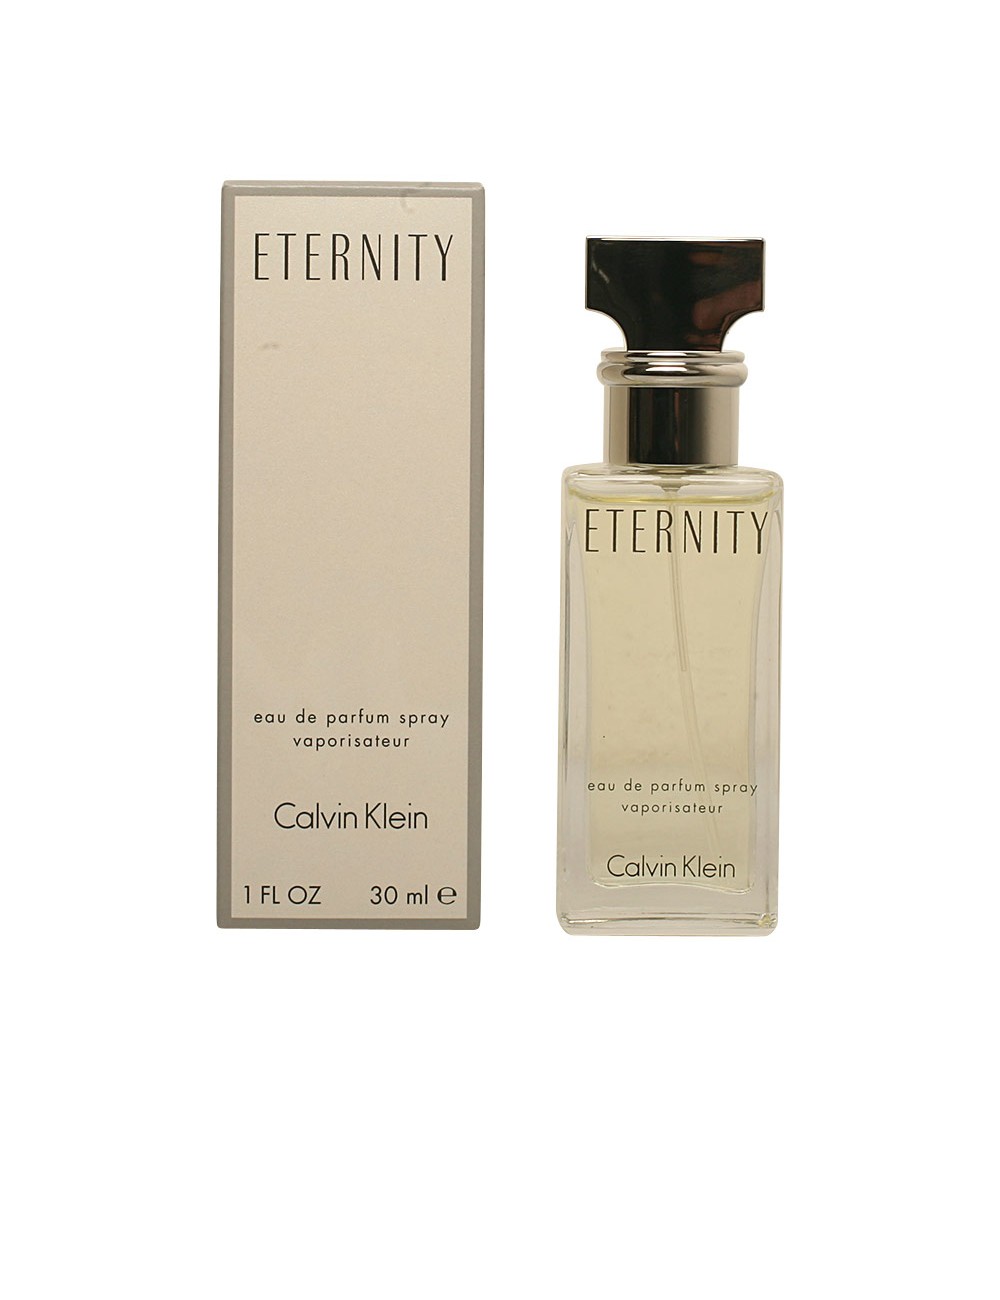 ETERNITY eau de parfum vaporisateur 30 ml NE17038